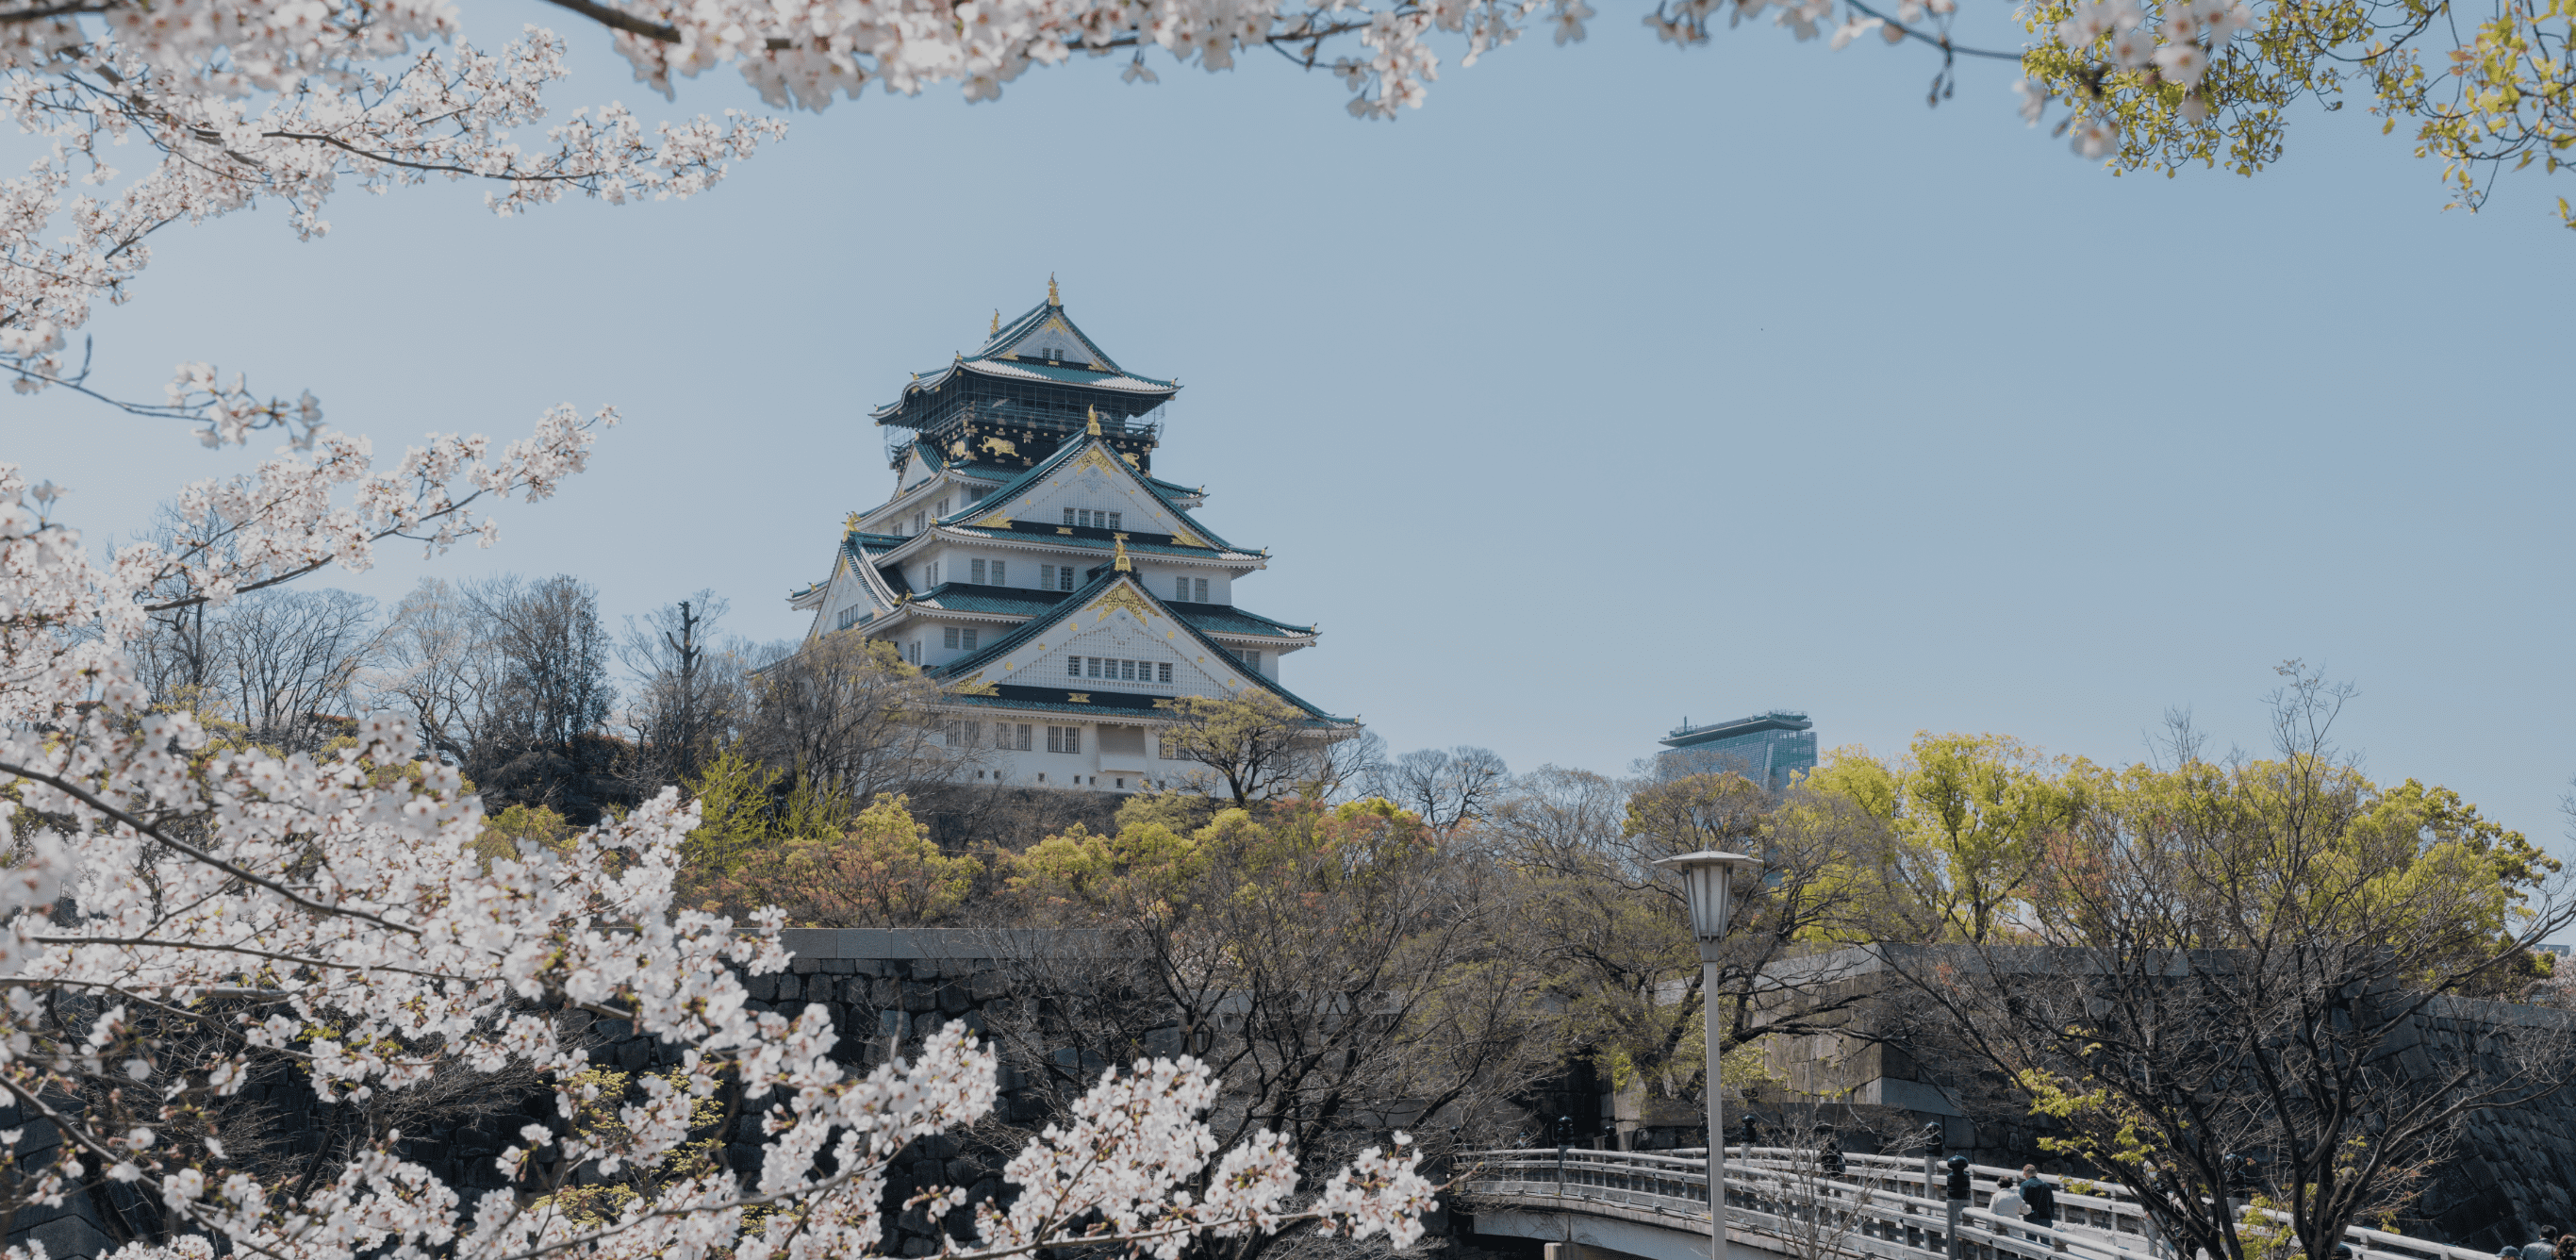  大阪城の風景画像